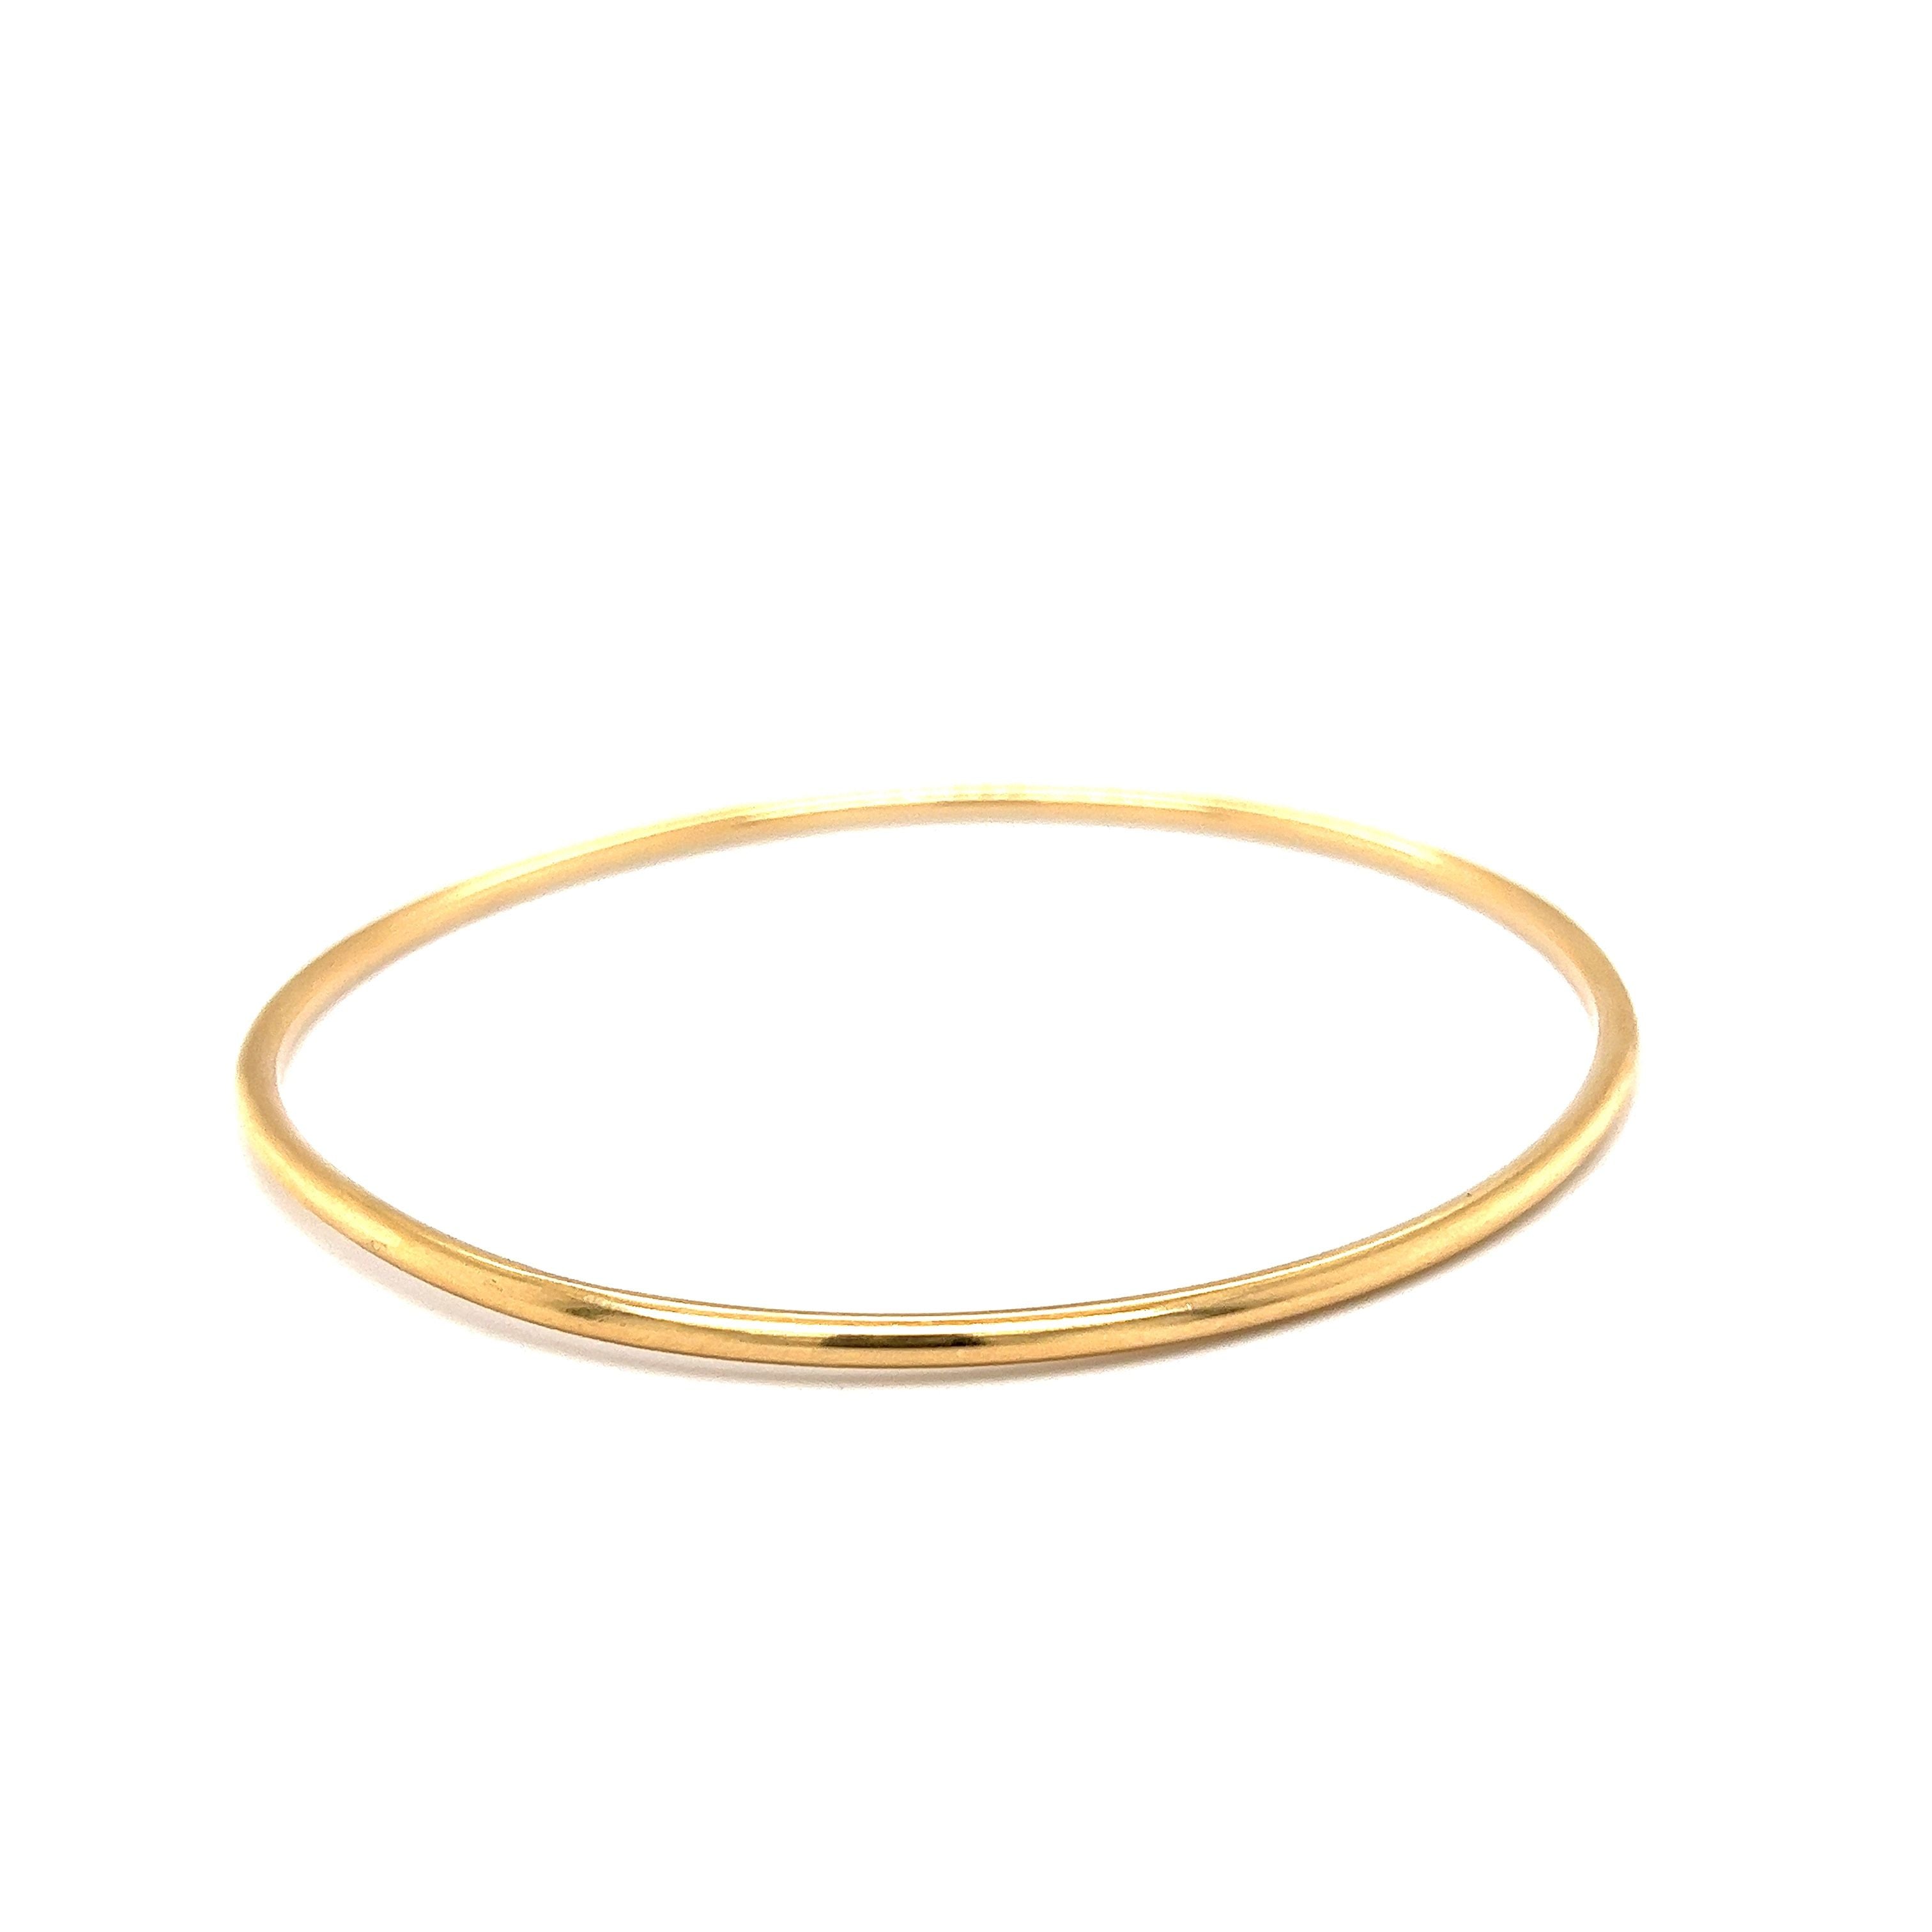 MILOR Italian 14K Yellow Gold Bangle Bracelet Resin Core 10mm Ribbed  21.32gm | eBay